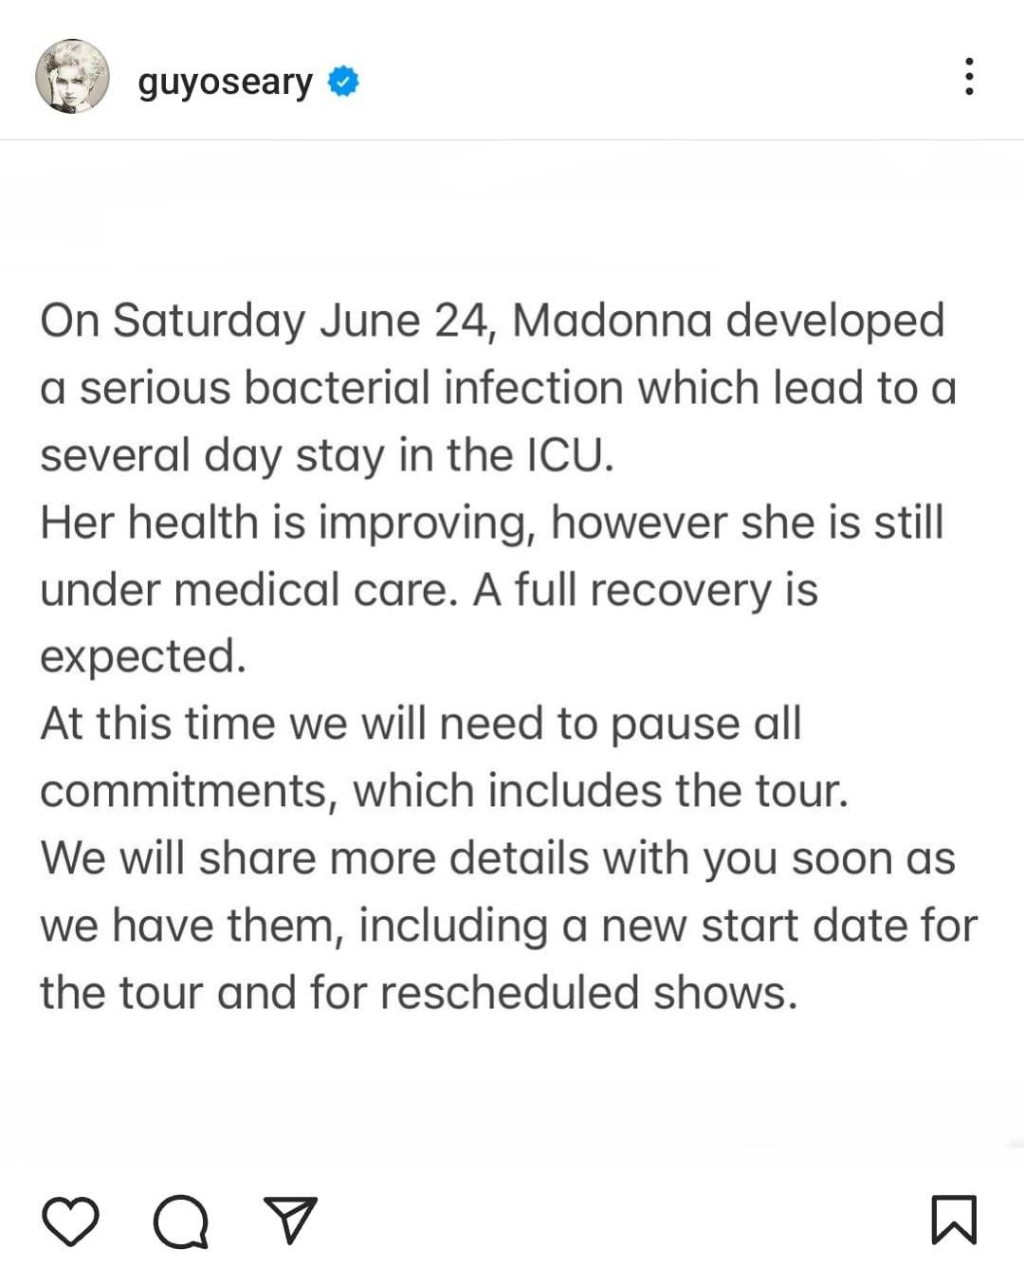 经理人Guy发声明表示麦当娜正在治疗，预计会完全康复。